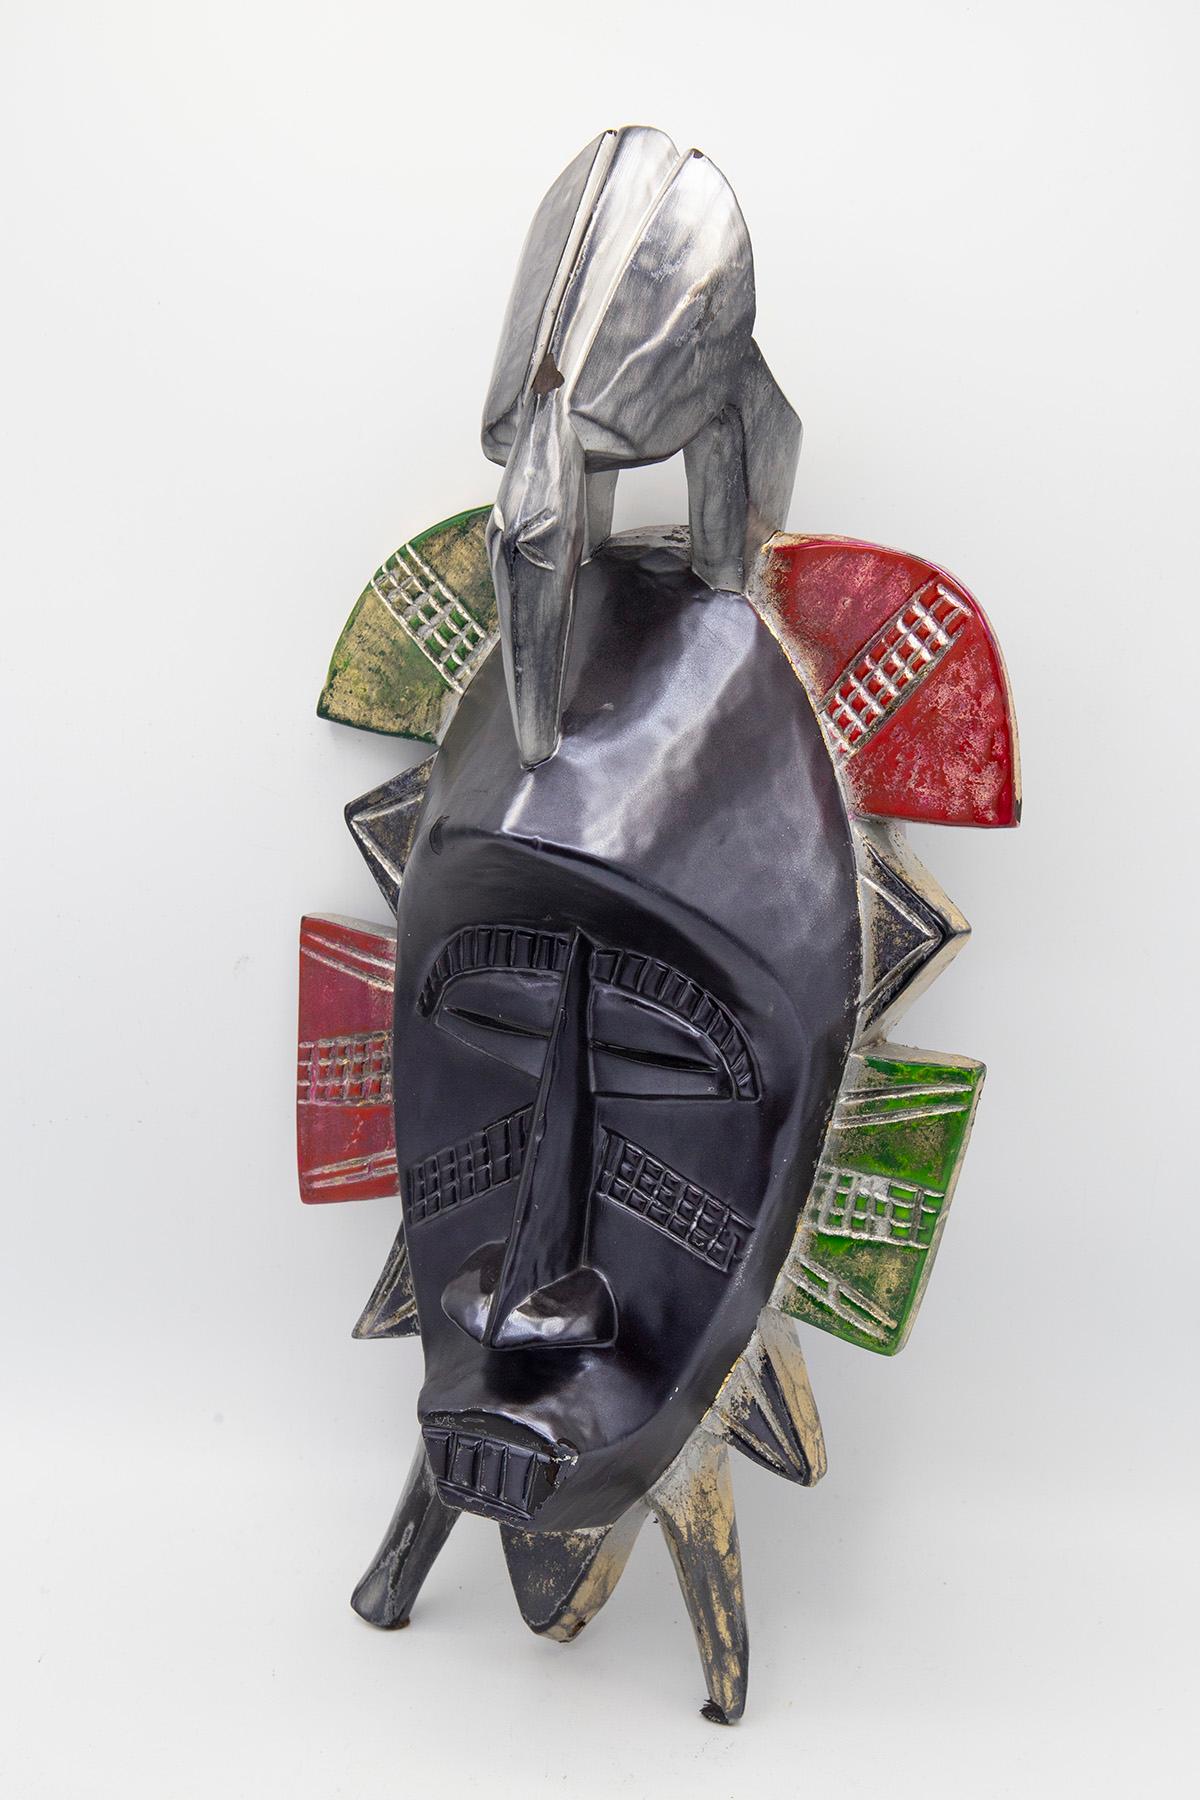 Zeitgenössische afrikanische Einzelmaske, geschaffen von dem Künstler Bomber Bax.
Die Maske stammt aus den frühen 1900er Jahren und wurde Ende 2022 von der Künstlerin bearbeitet und bemalt.
Der Künstler verwendete spezielle Metallic-Farben, um einen